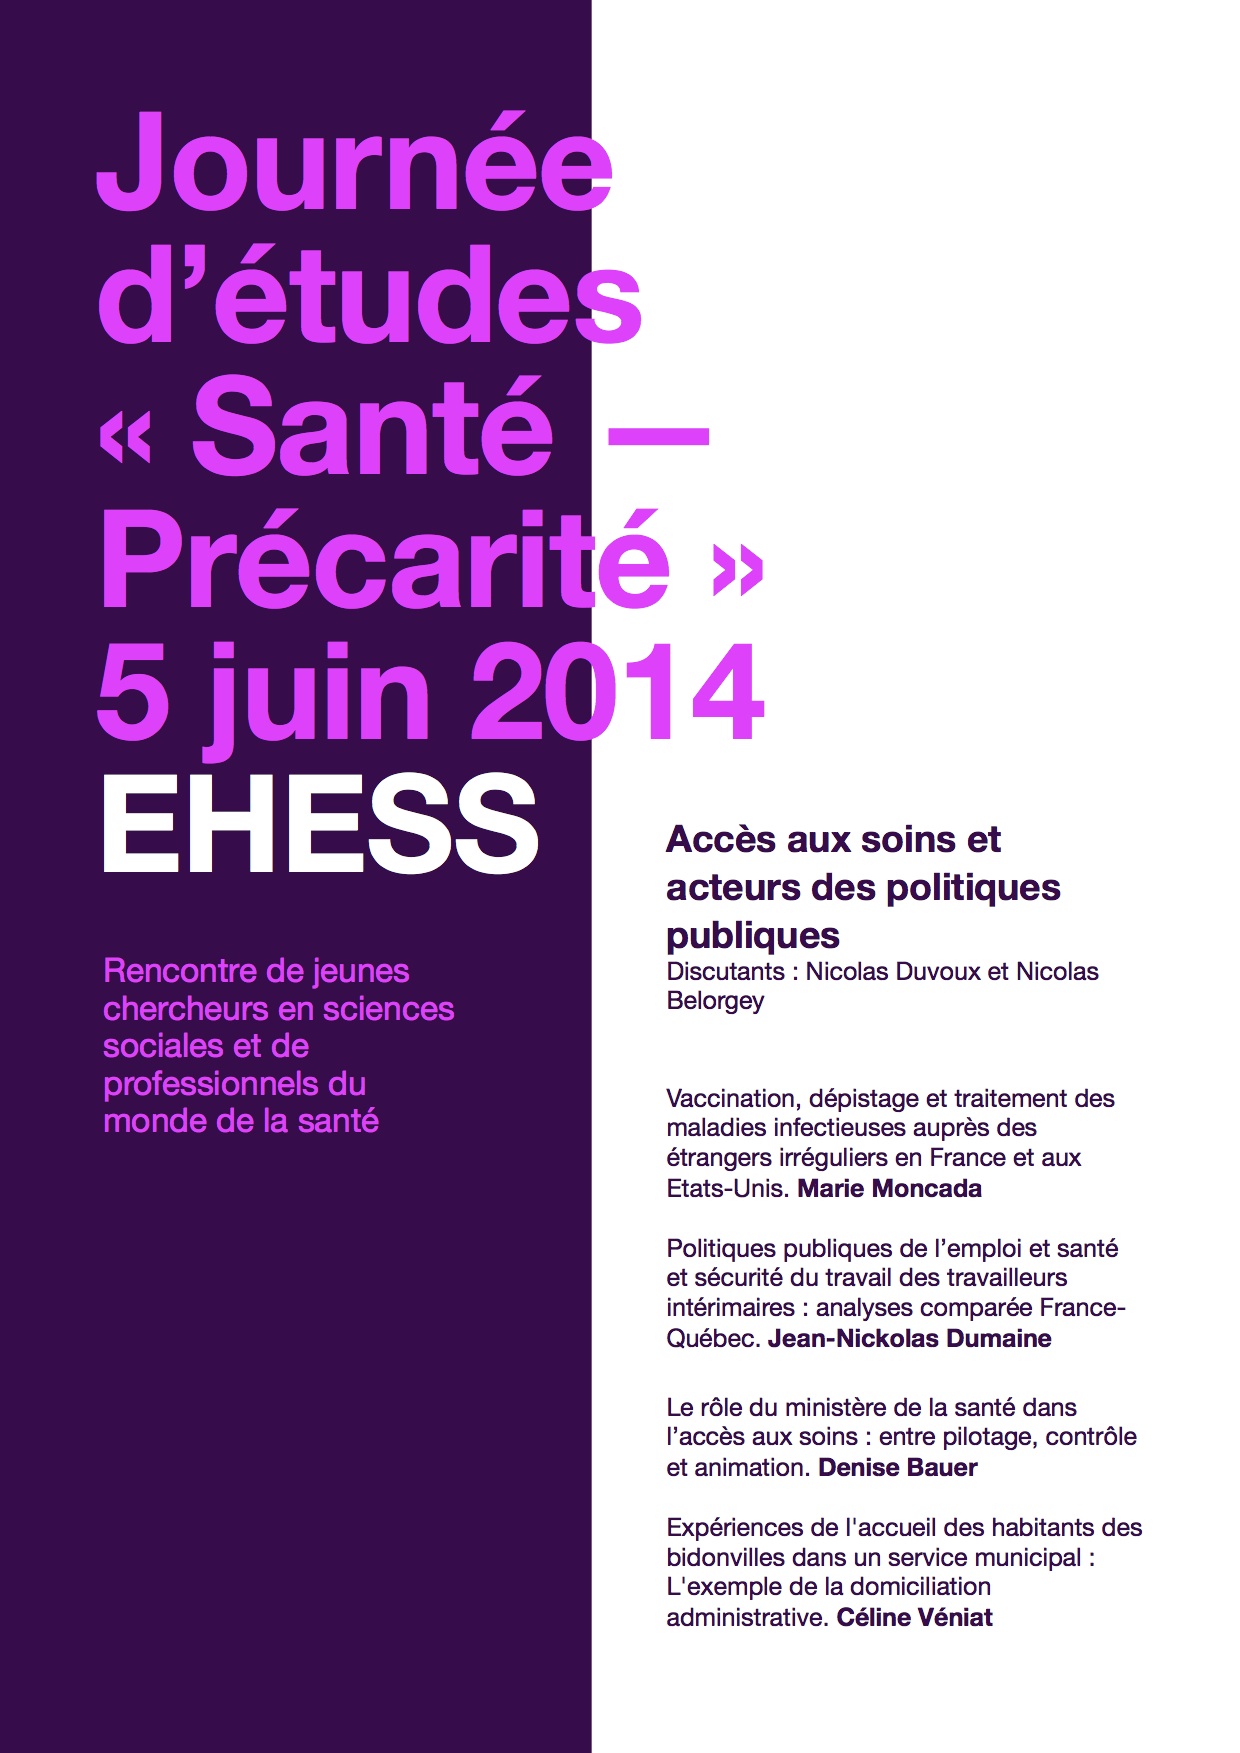 Journée d'études Santé - Précarité > 5 juin 2014